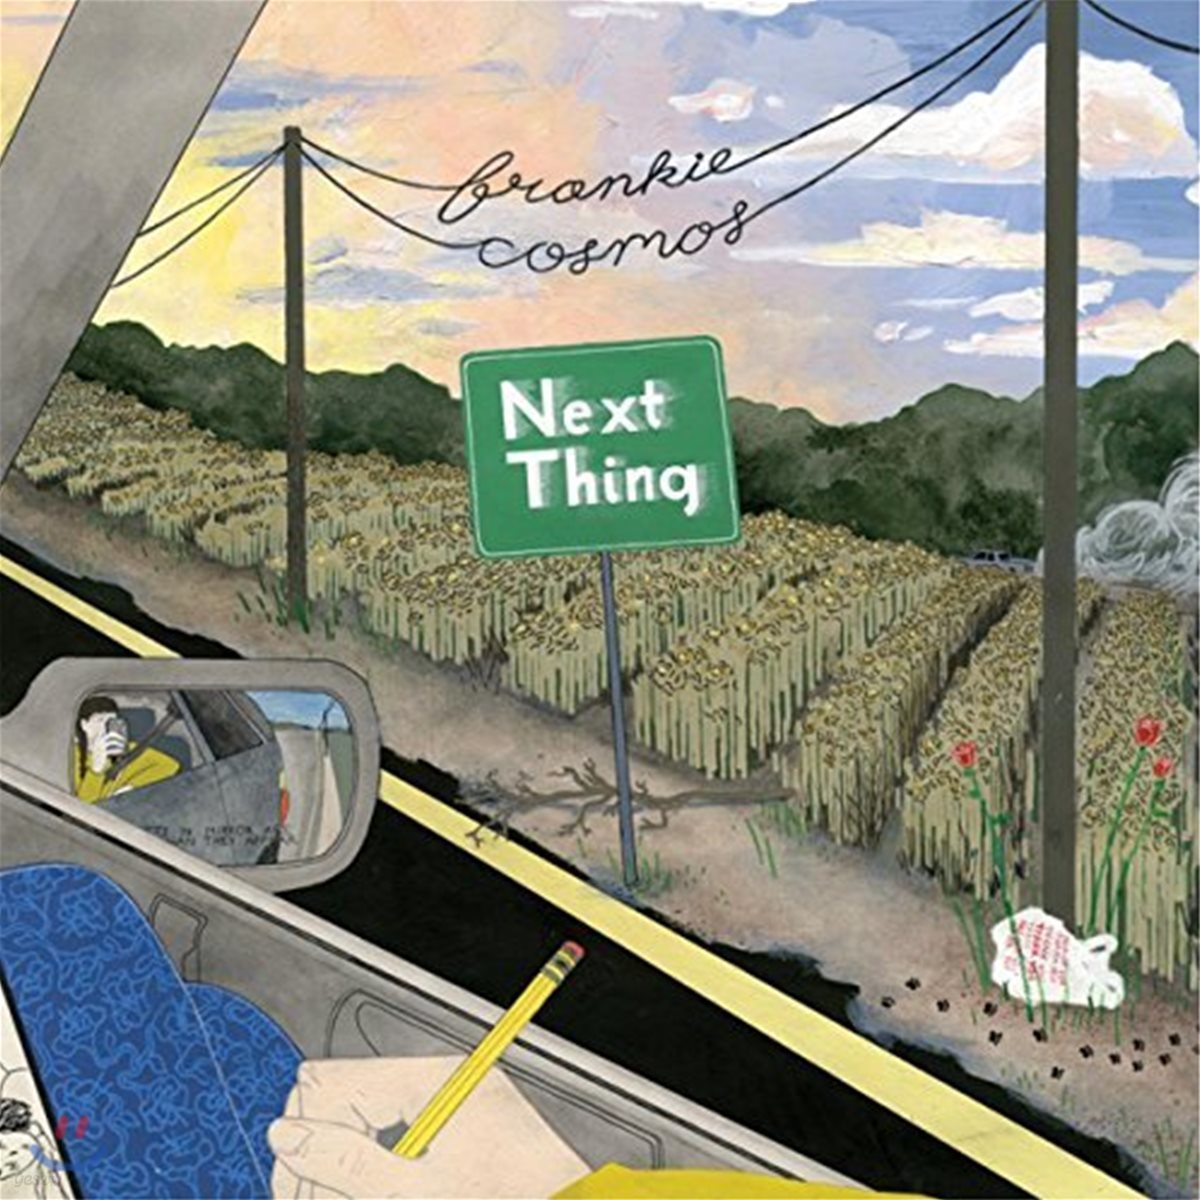 Frankie Cosmos (프랭키 코스모스) - Next Thing [LP]